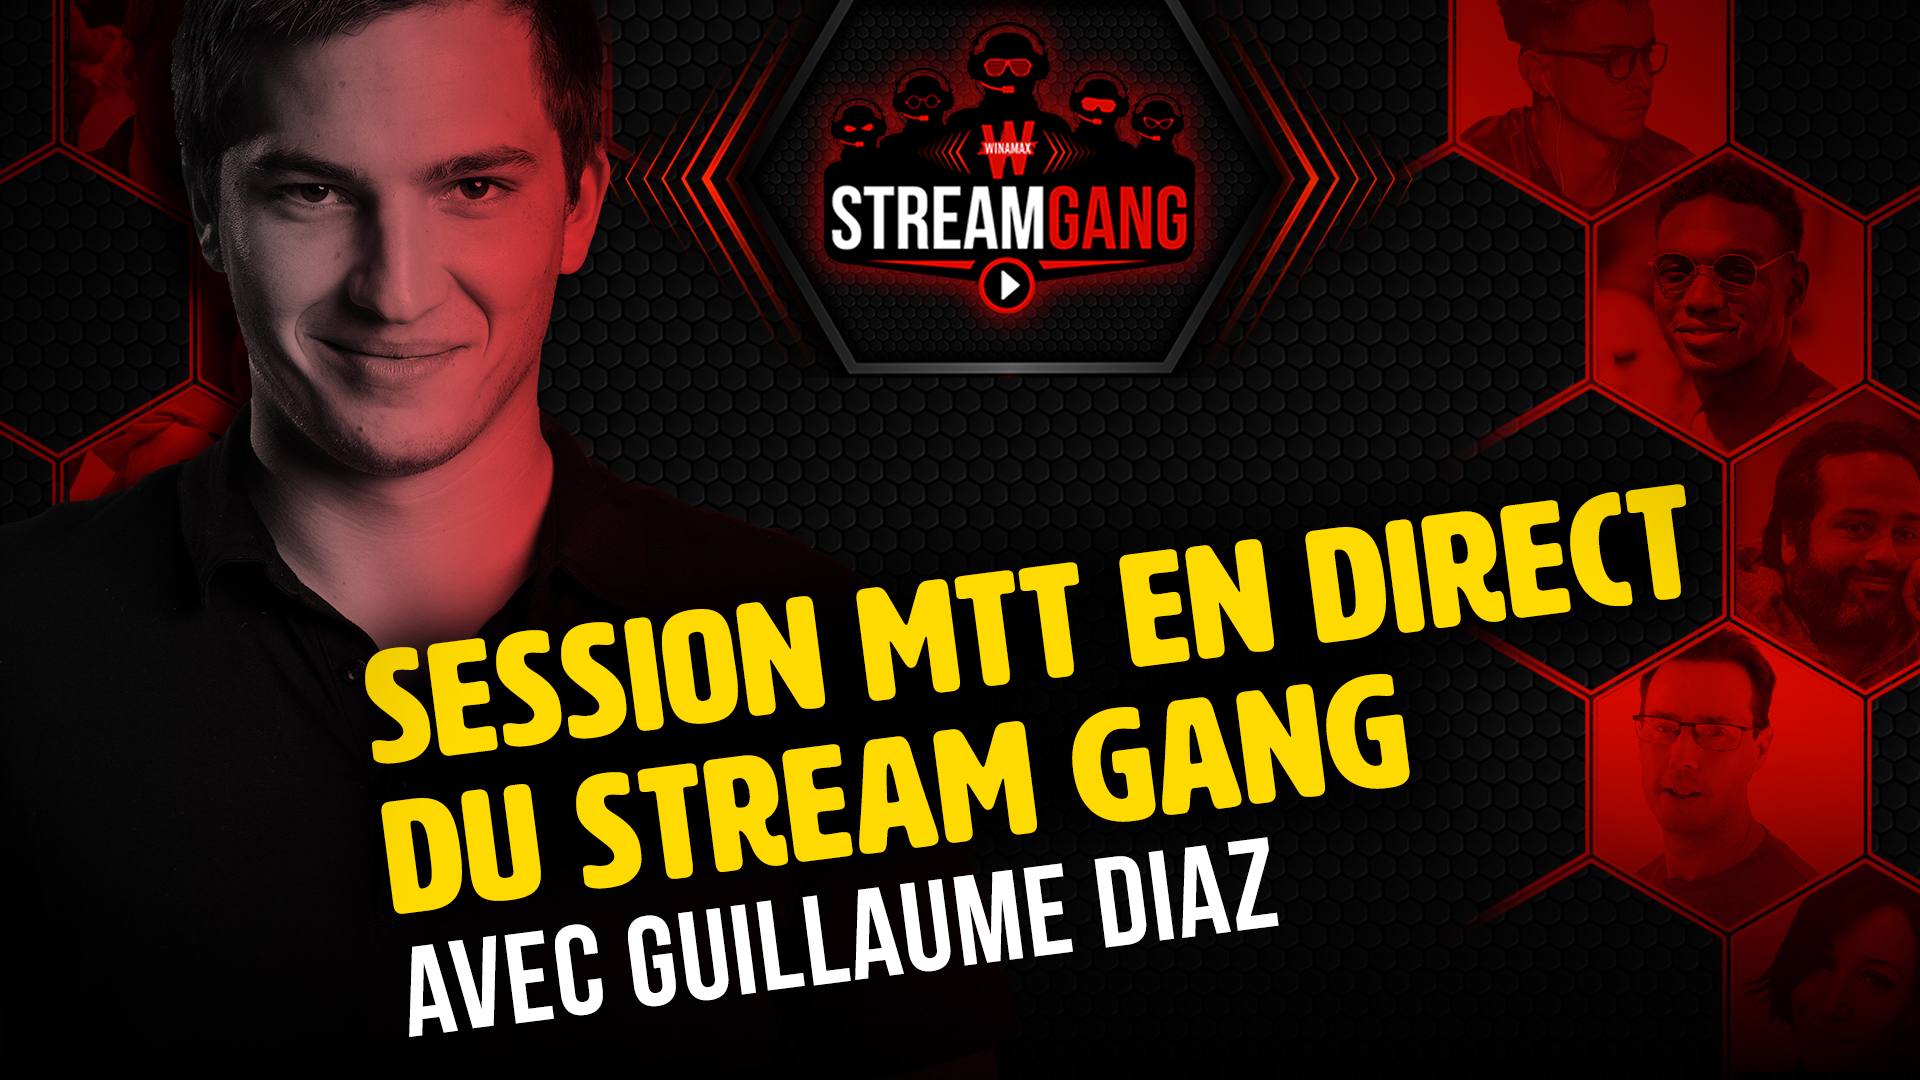 Stream Gang Guillaume Diaz